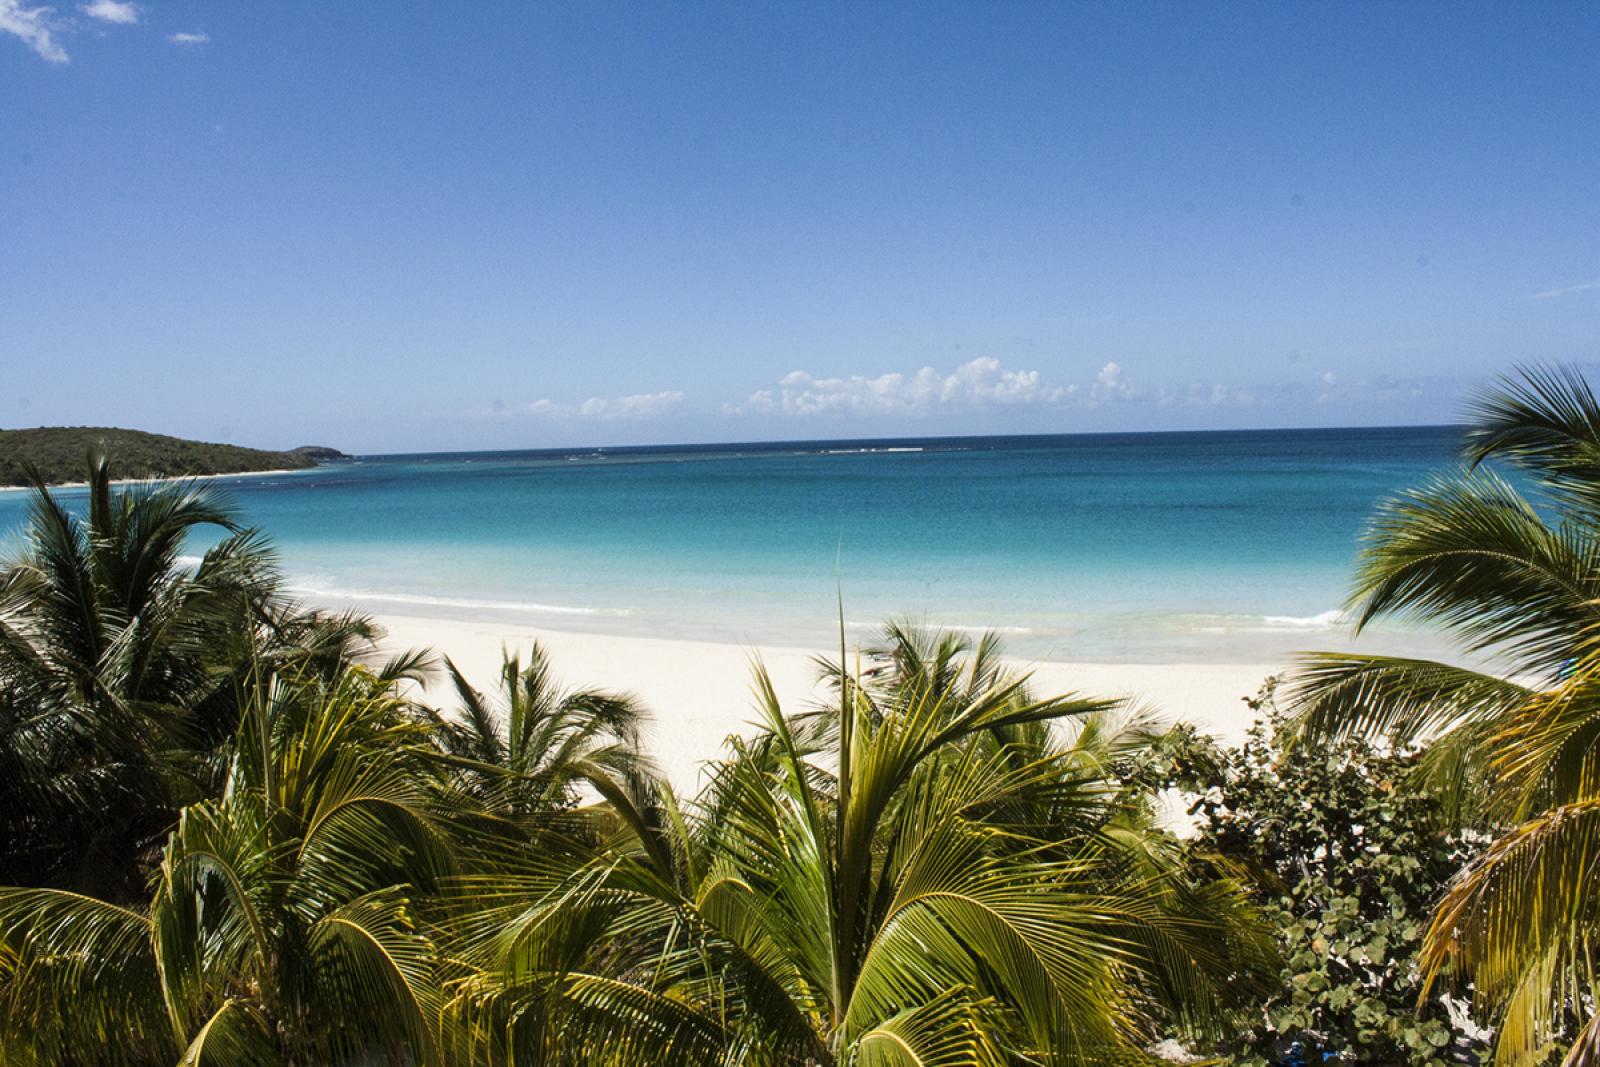 View of Flamenco beach in Culebra.